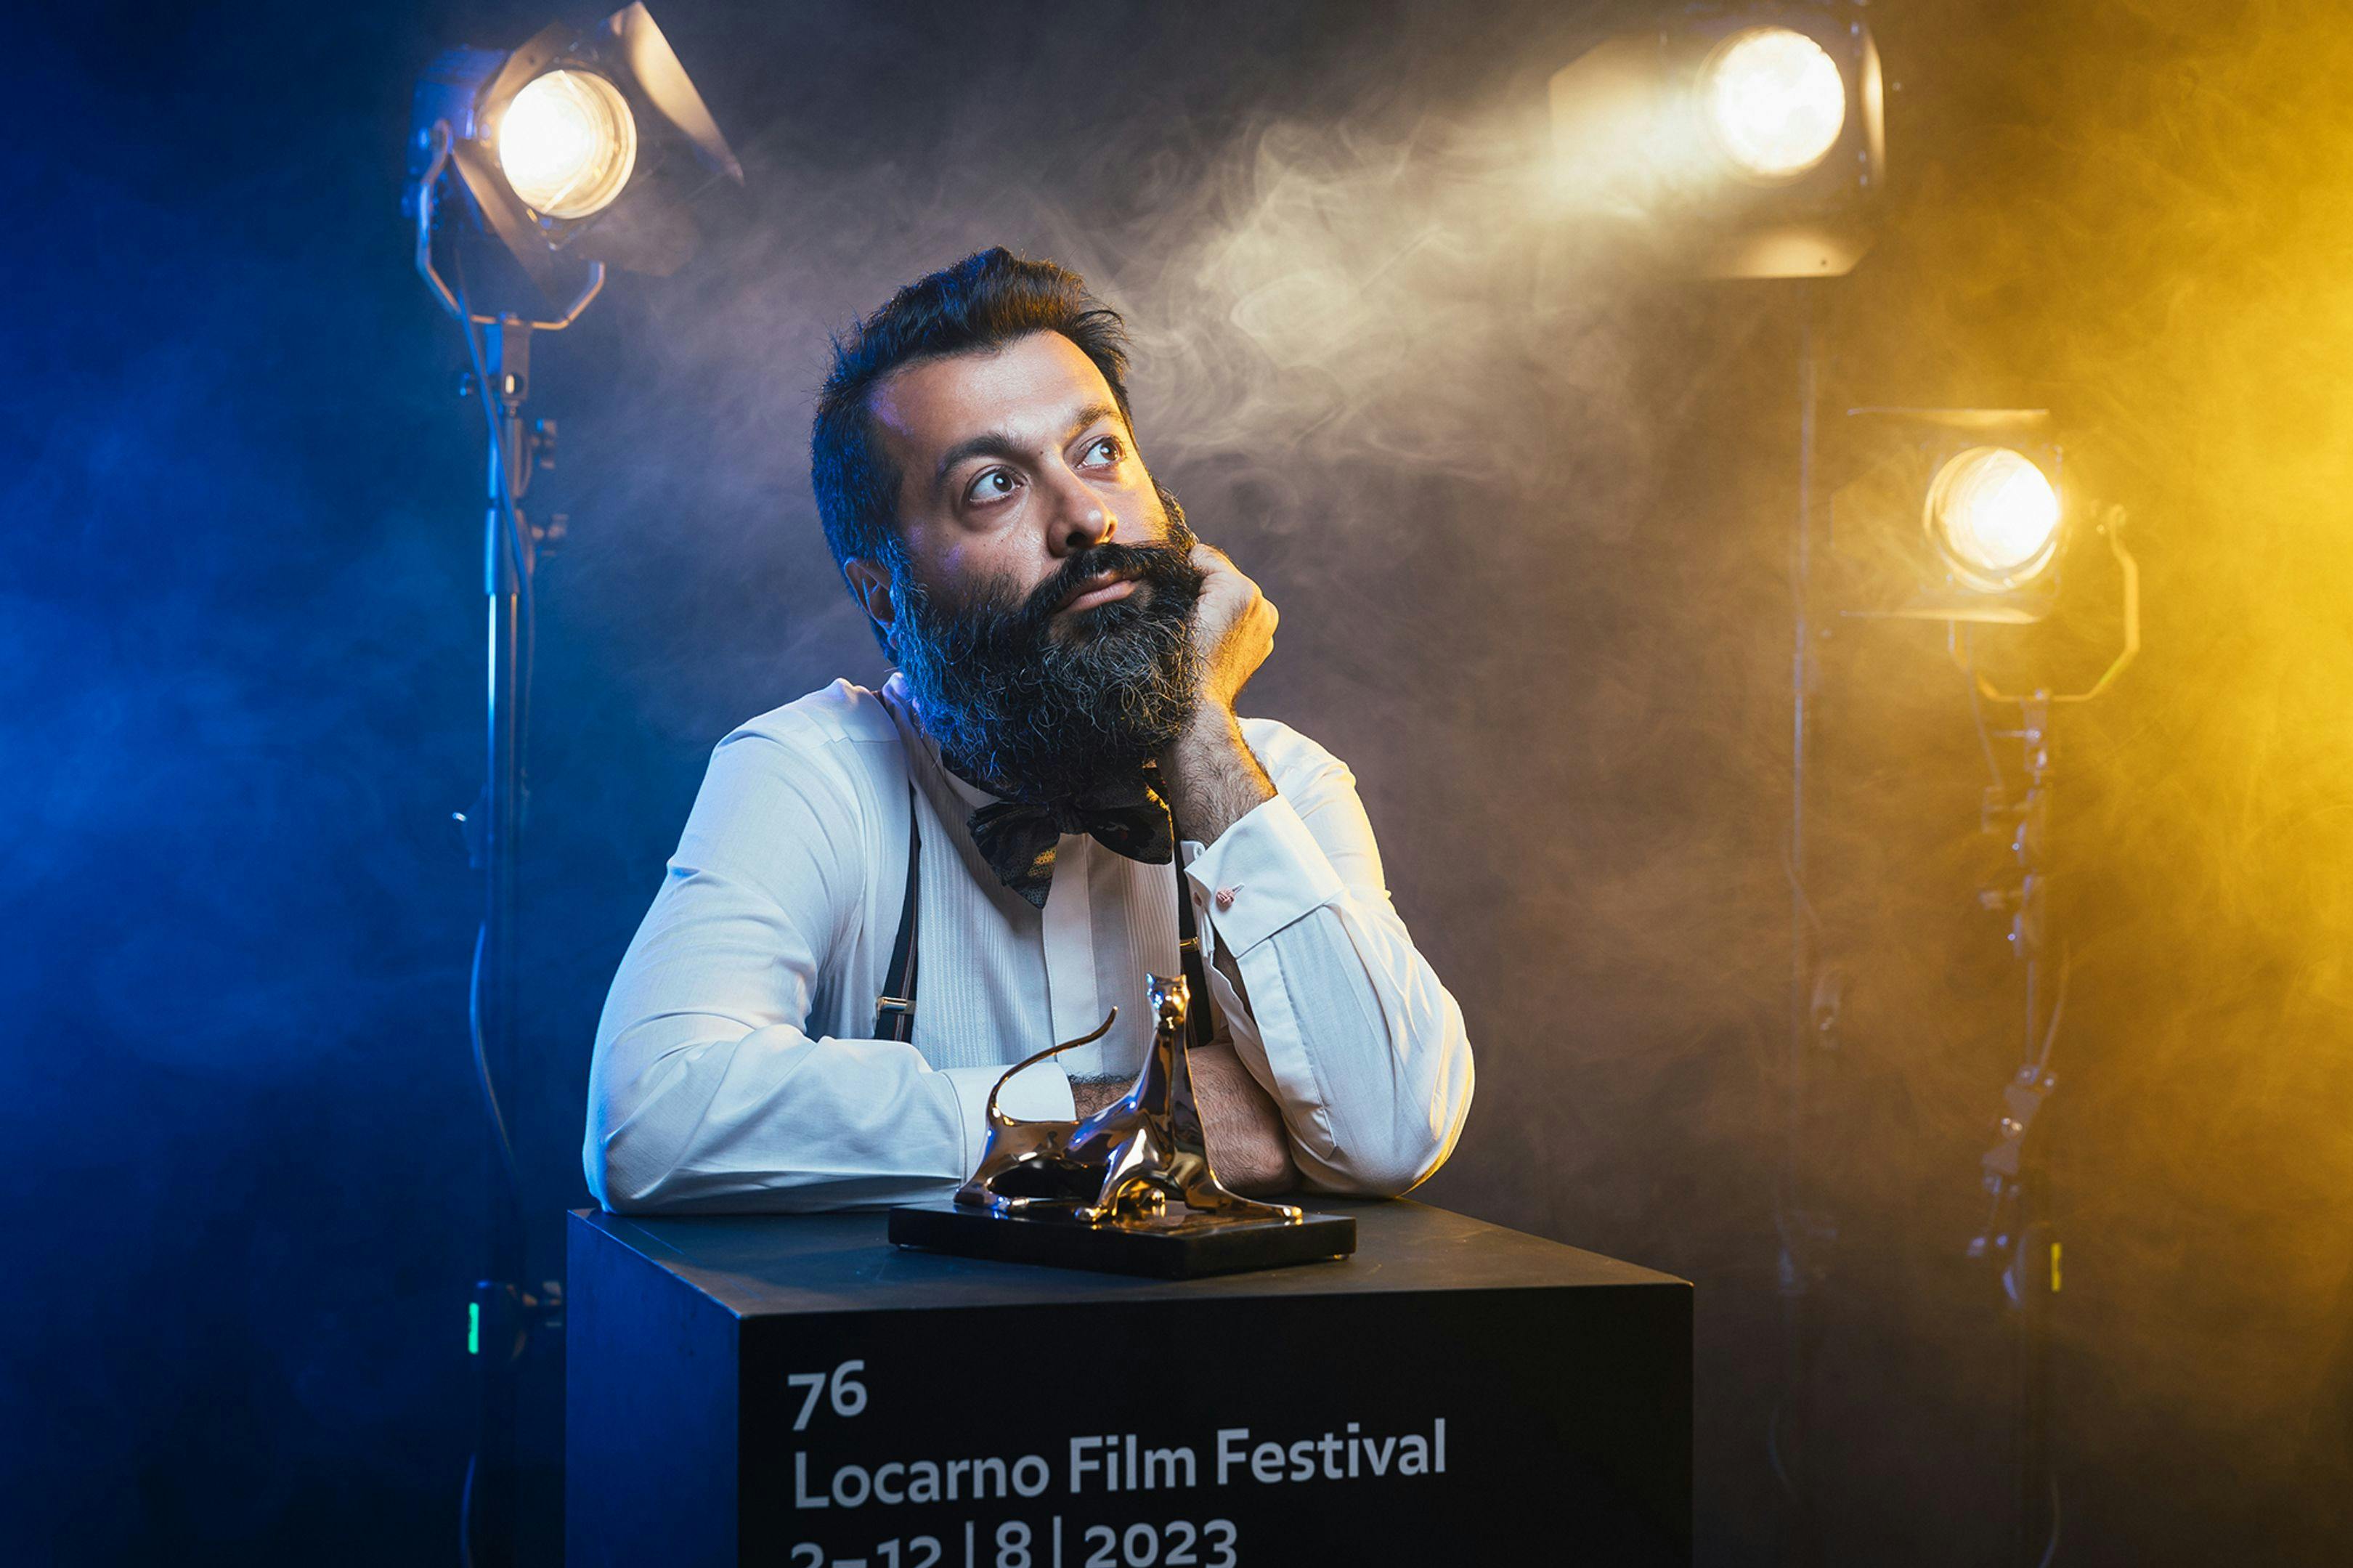 Sina Ataeian Dena, productor de 'Critical zone', de Ali Ahmadzadeh, posa con el Leoparto de Oro en la edición 76 del Festival de Cine de Locarno